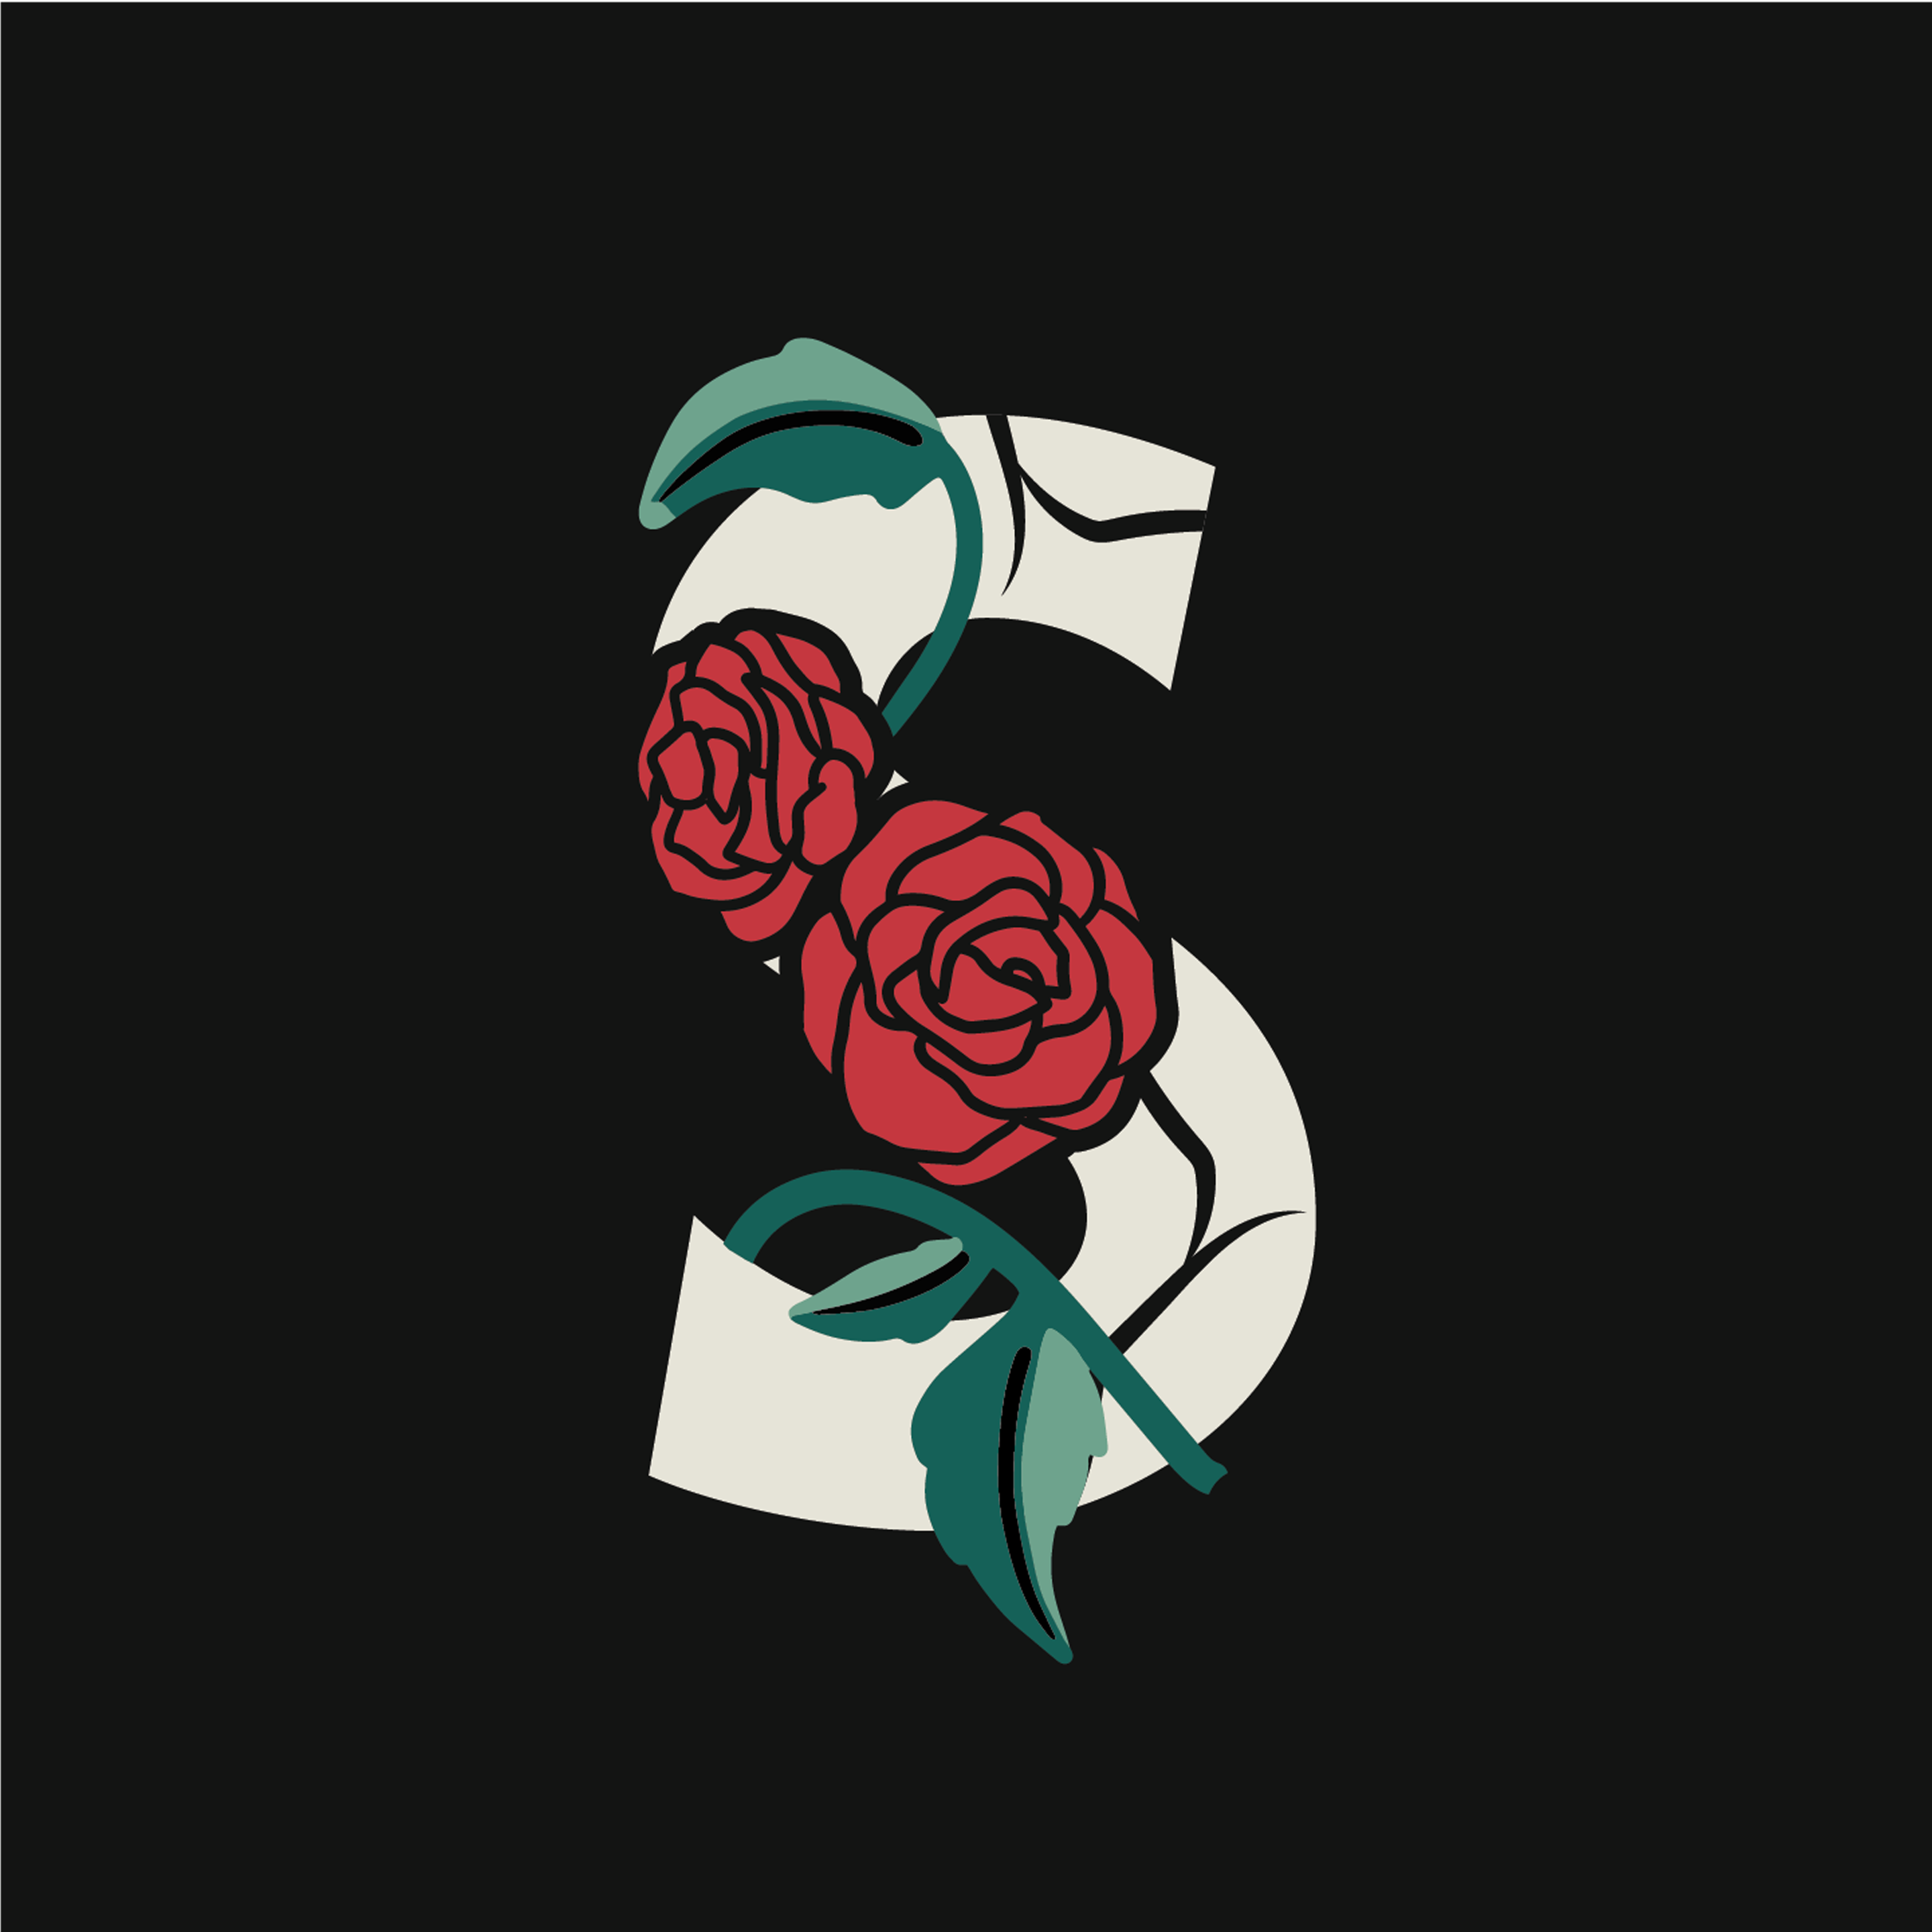 rose-letter-s-design-theme